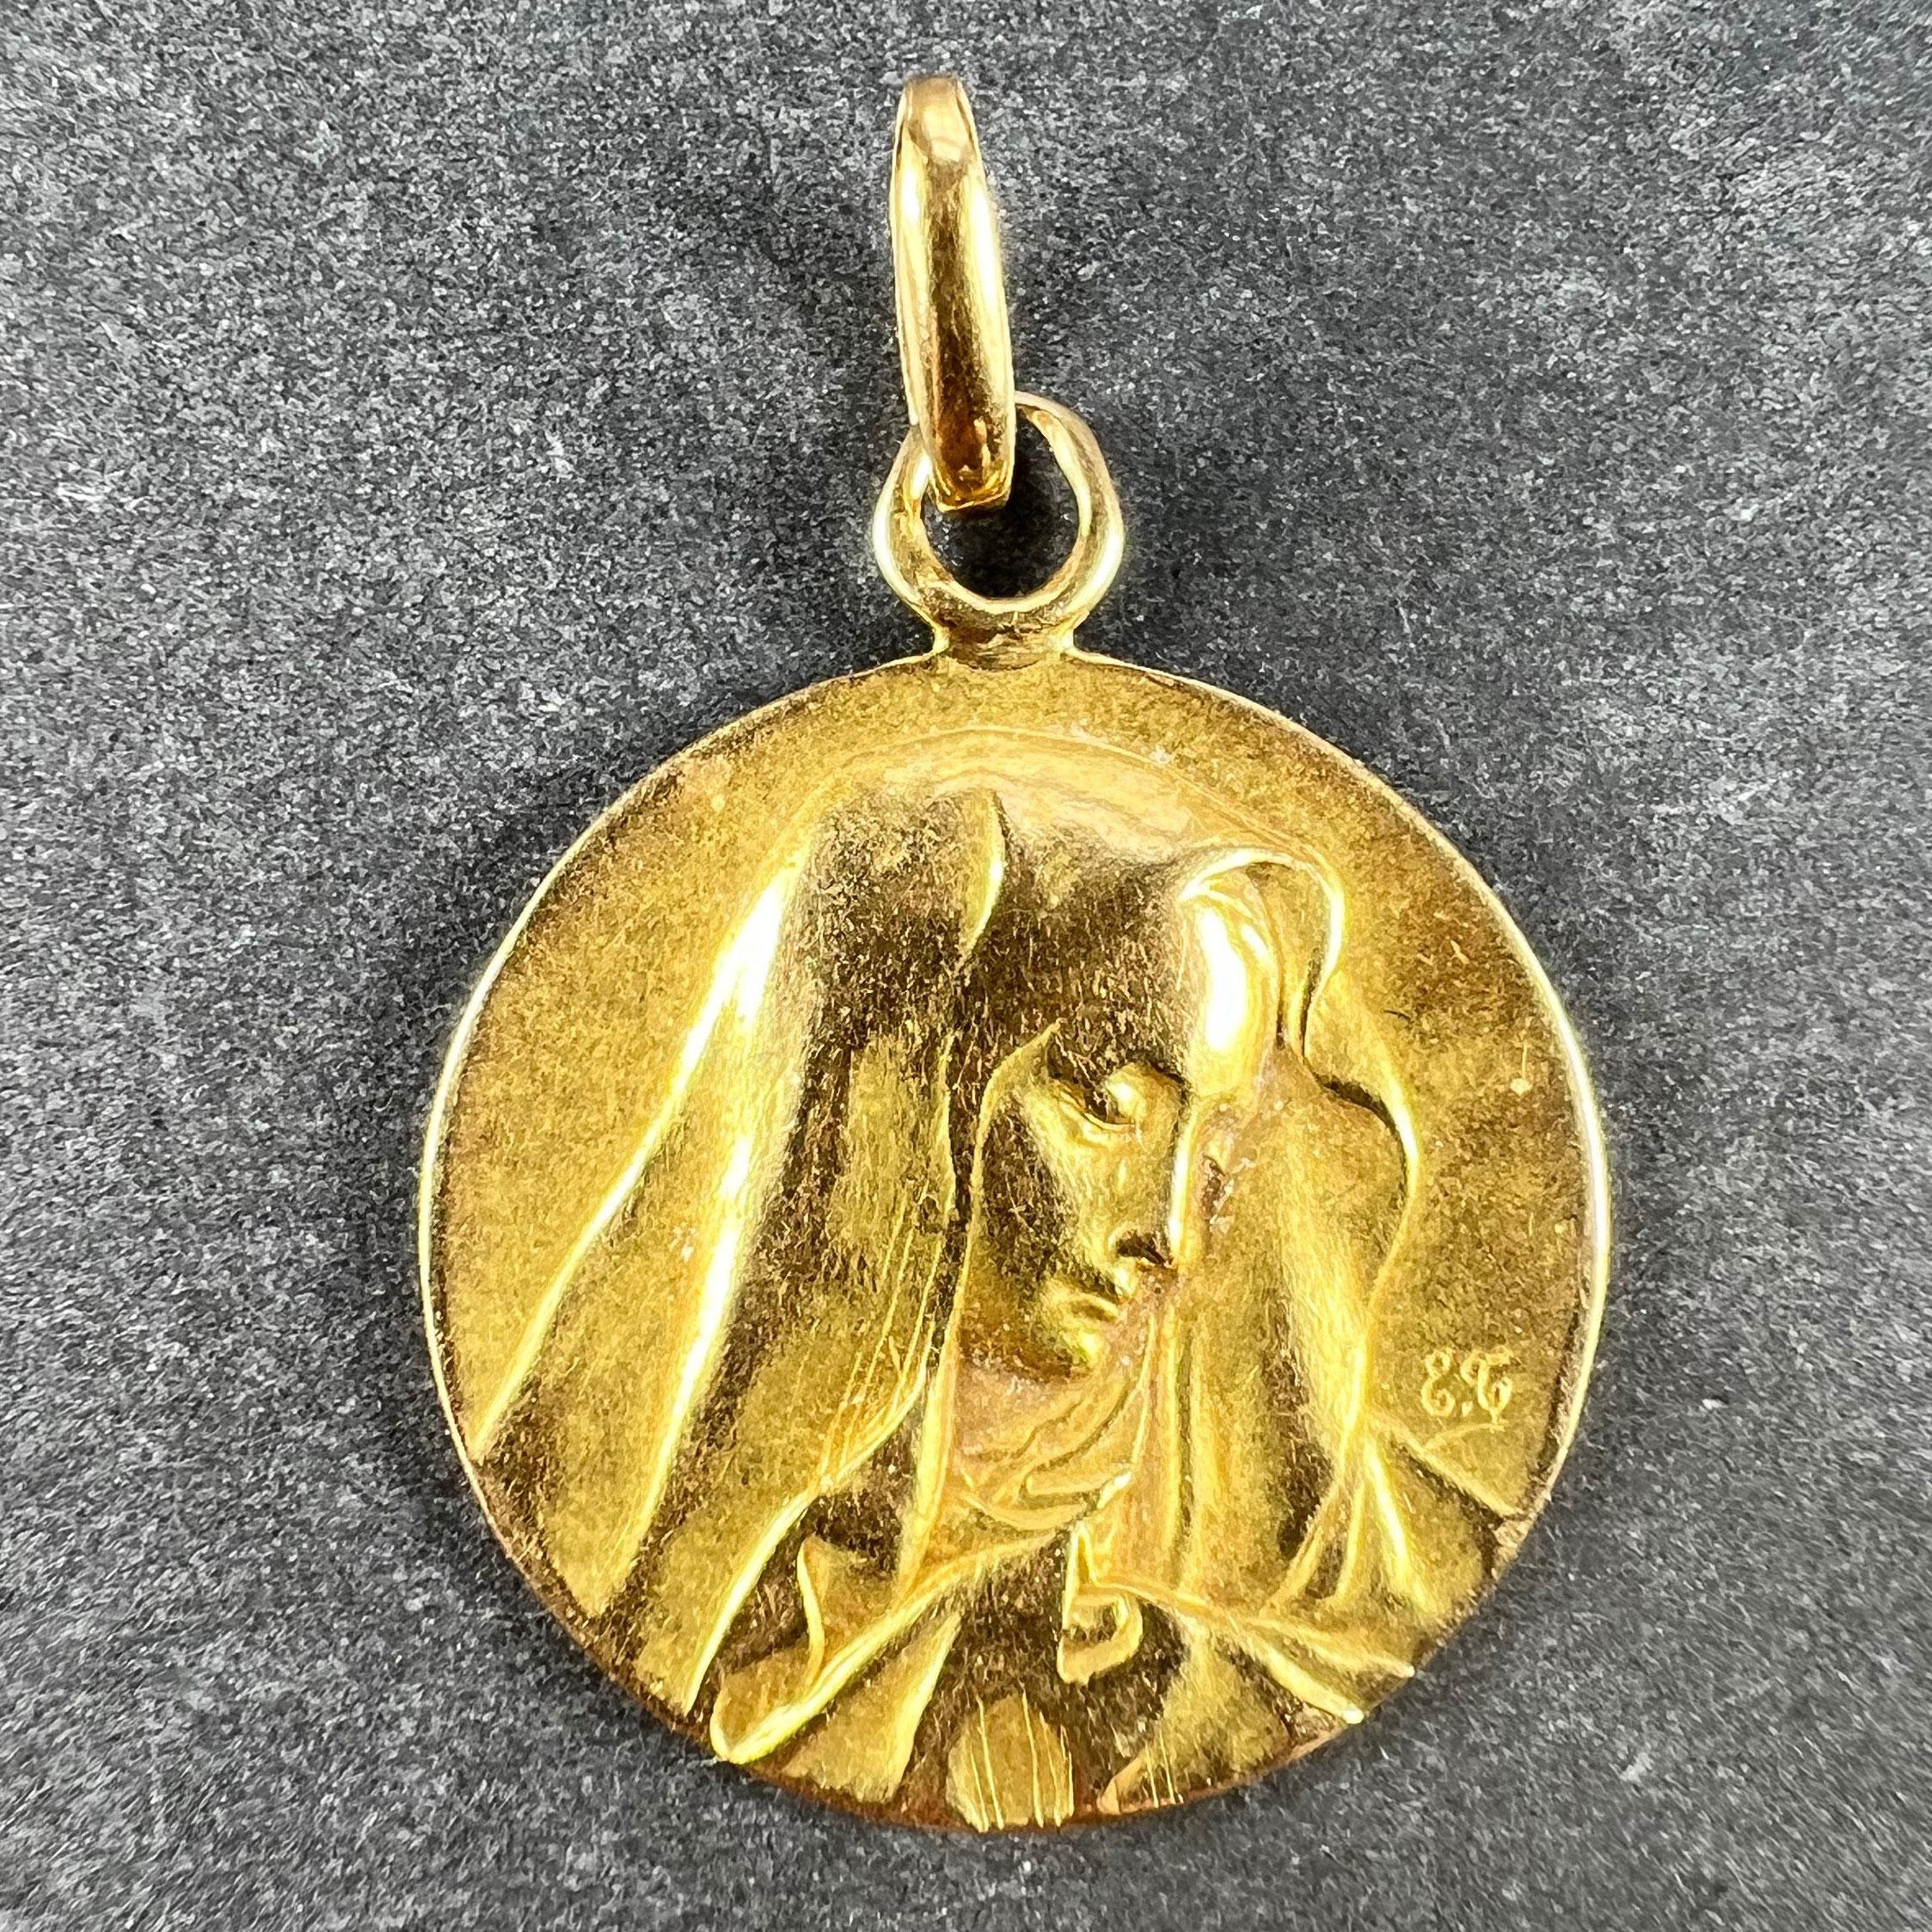 Pendentif à breloques en or jaune 18 carats (18K) conçu comme une médaille ronde représentant la Vierge Marie dans un voile ; gravé Aline au revers et daté du 26 mars 1913. Non marqué mais testé pour l'or 18 carats.

Dimensions : 2,1 x 1,8 x 0,13 cm